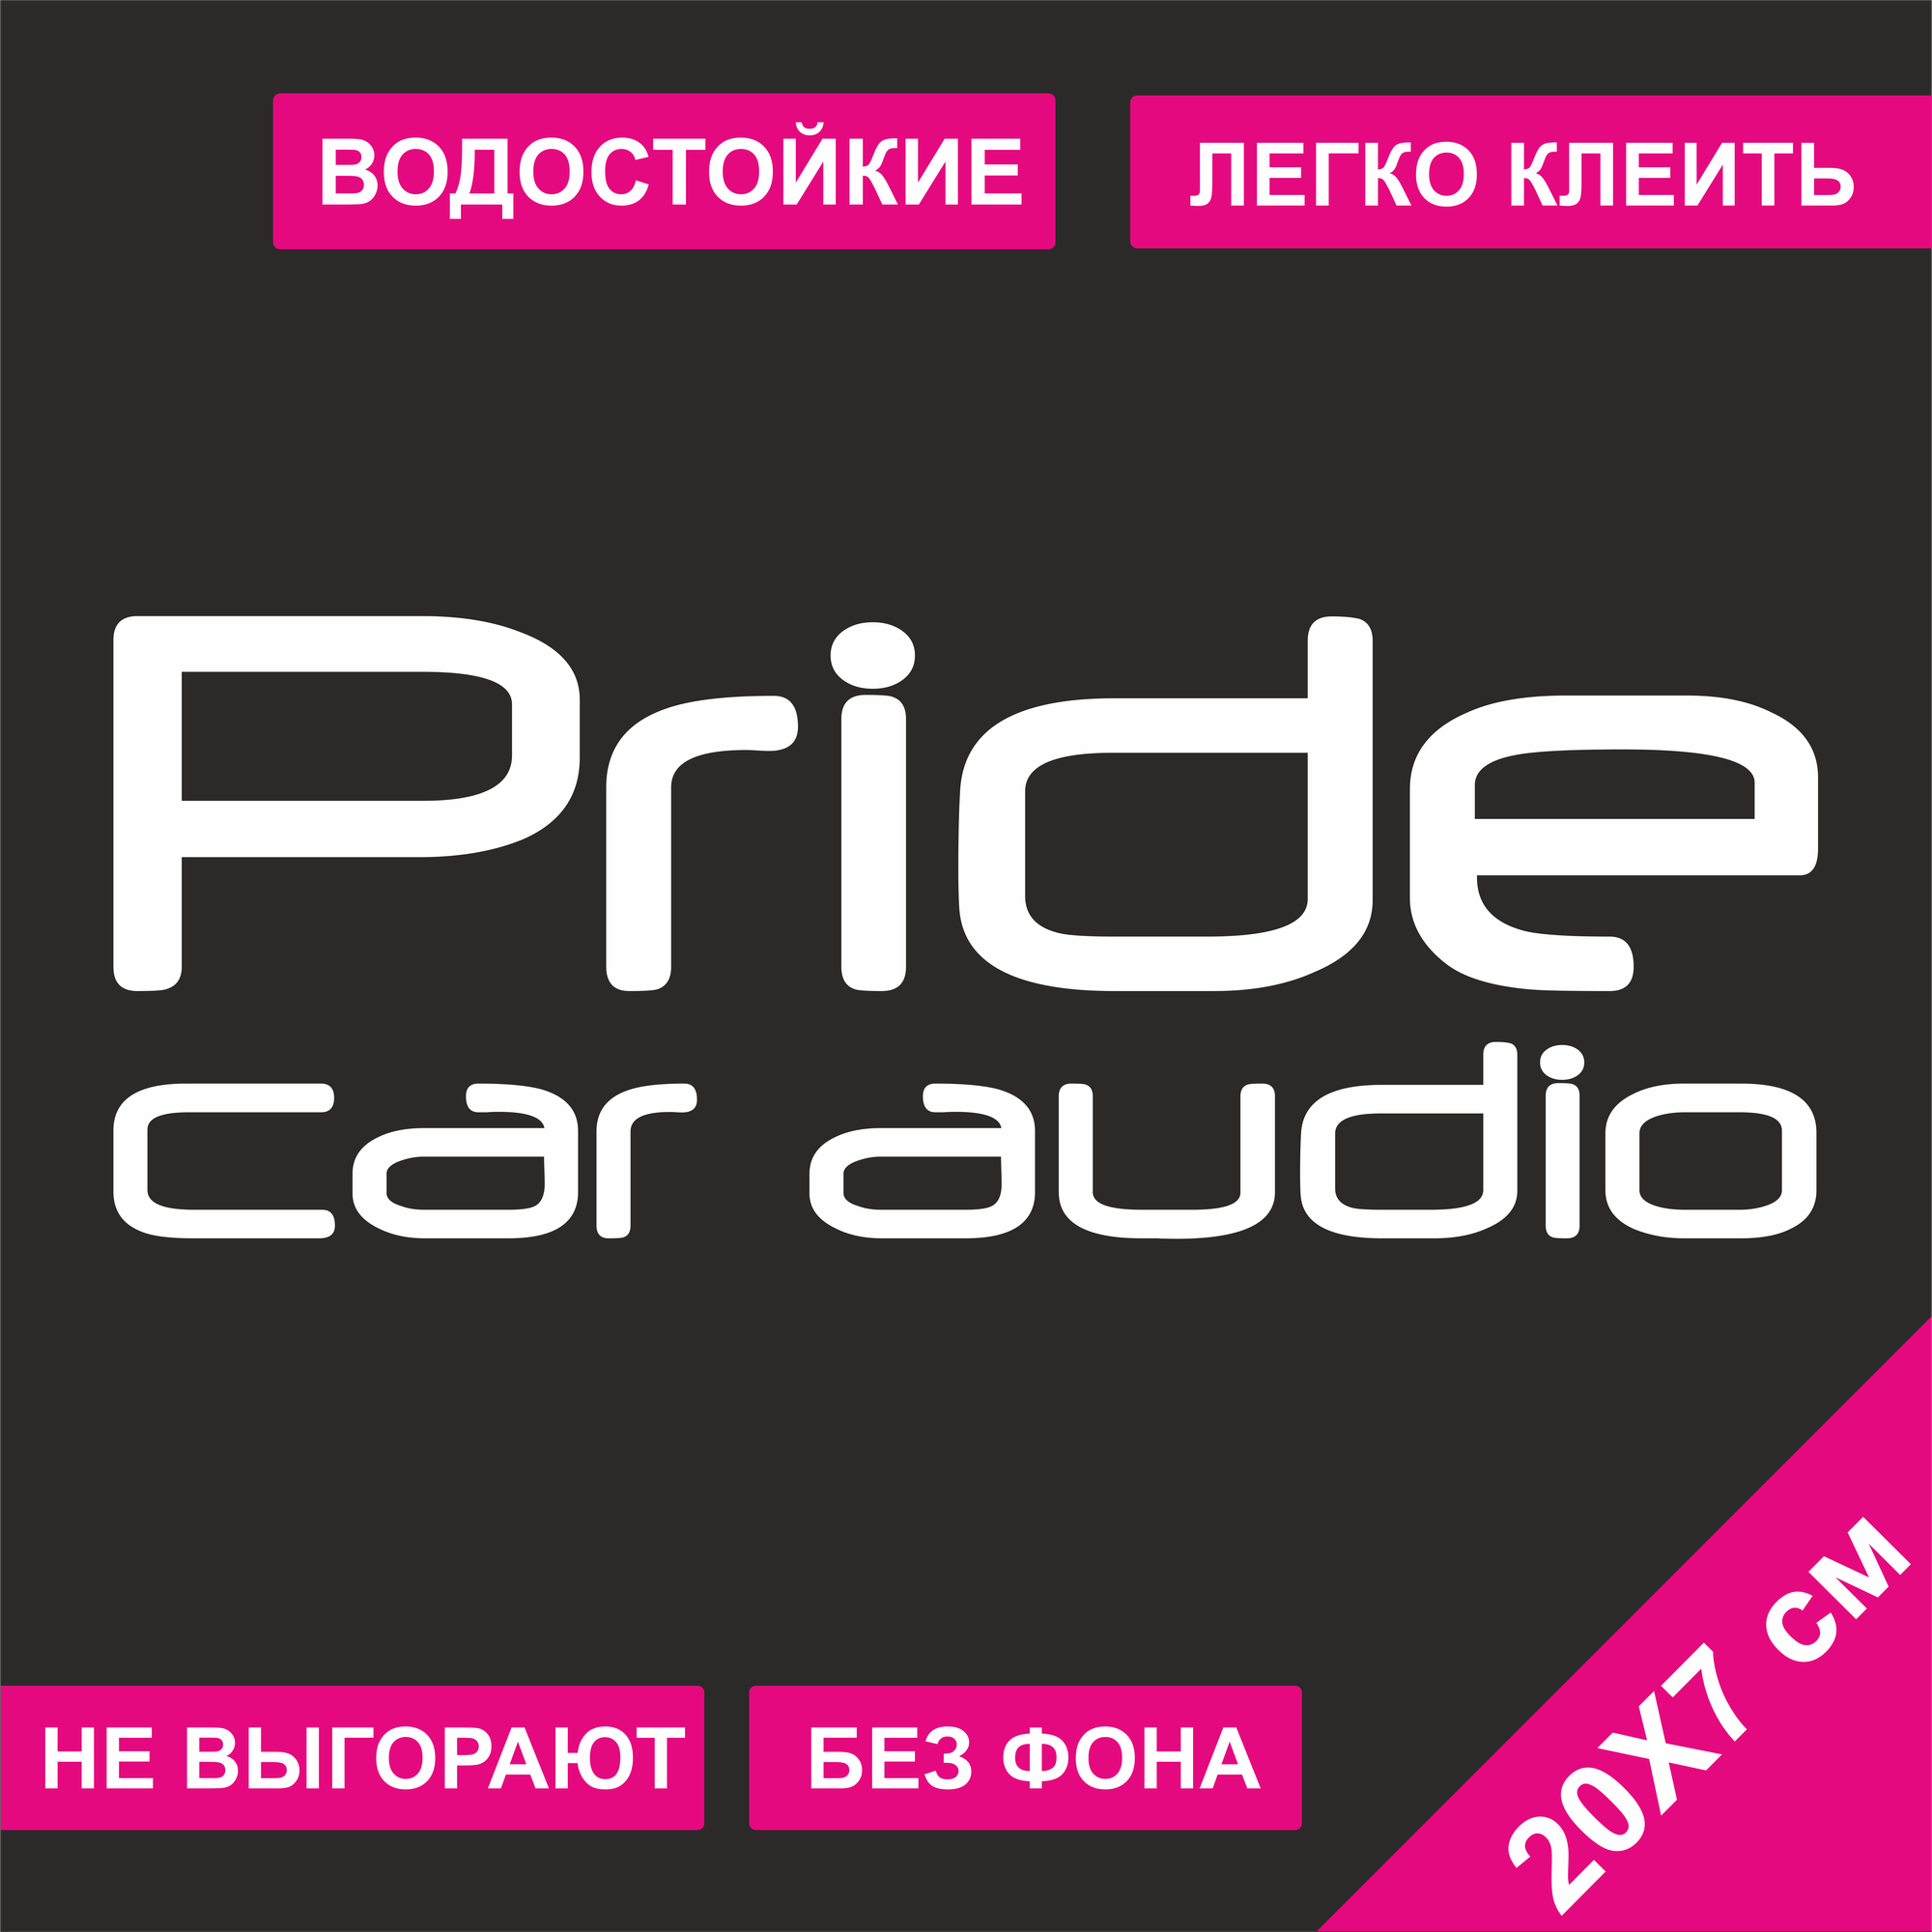 Наклейка на автомобиль - Pride car audio 20x7 см